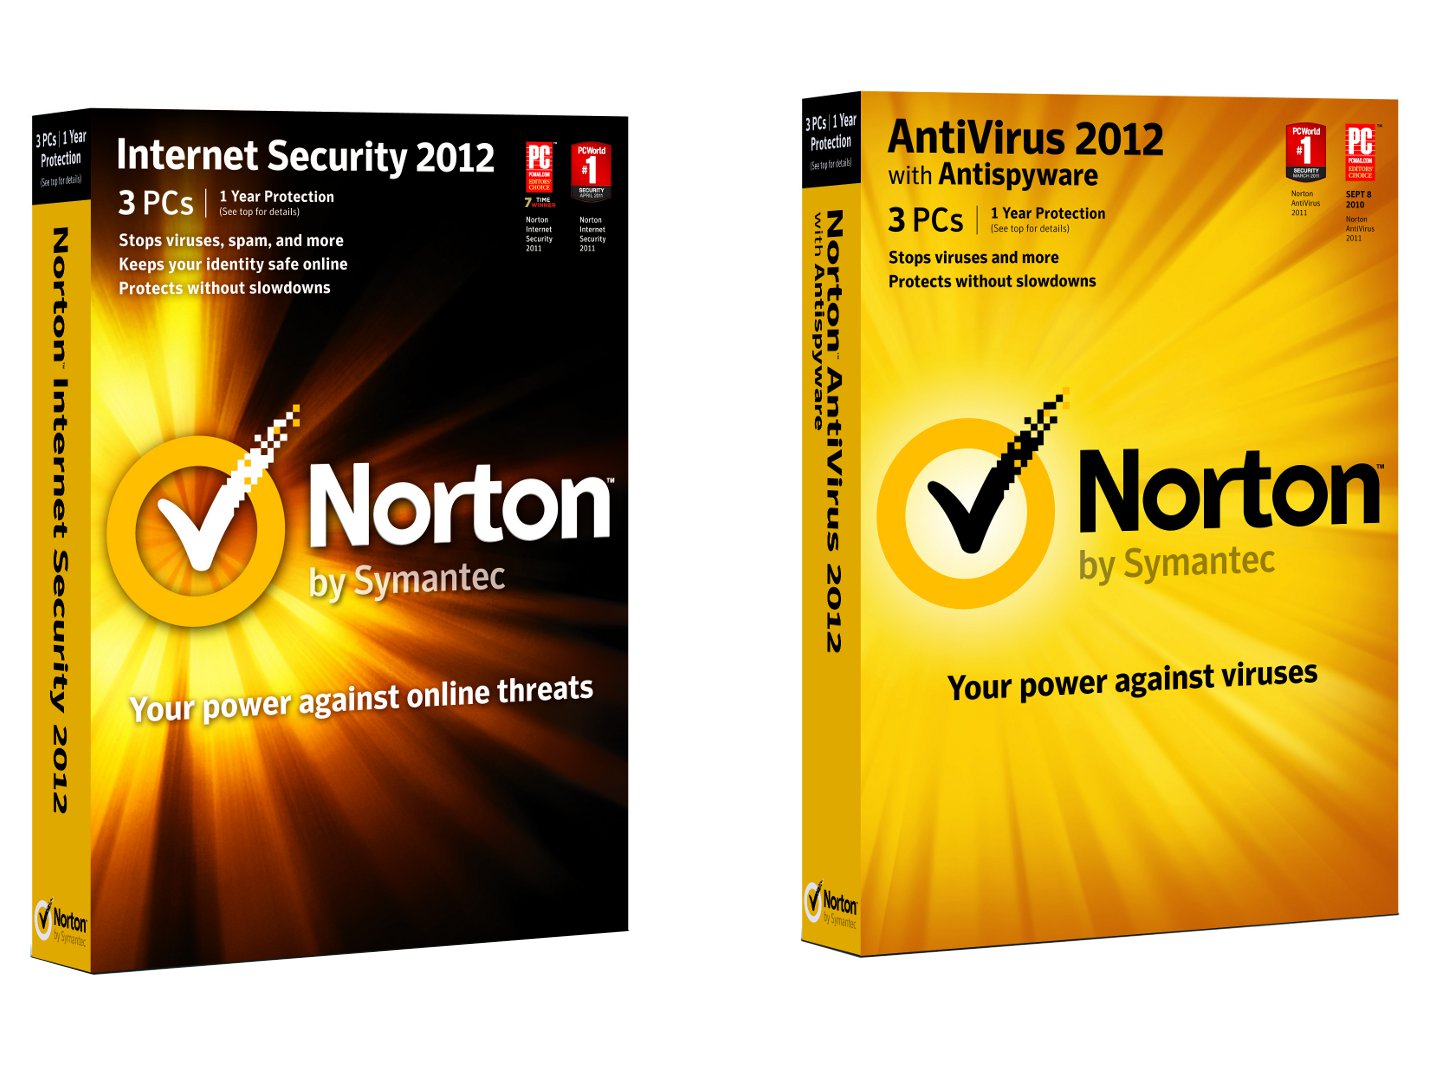 How Much Is Norton Antivirus